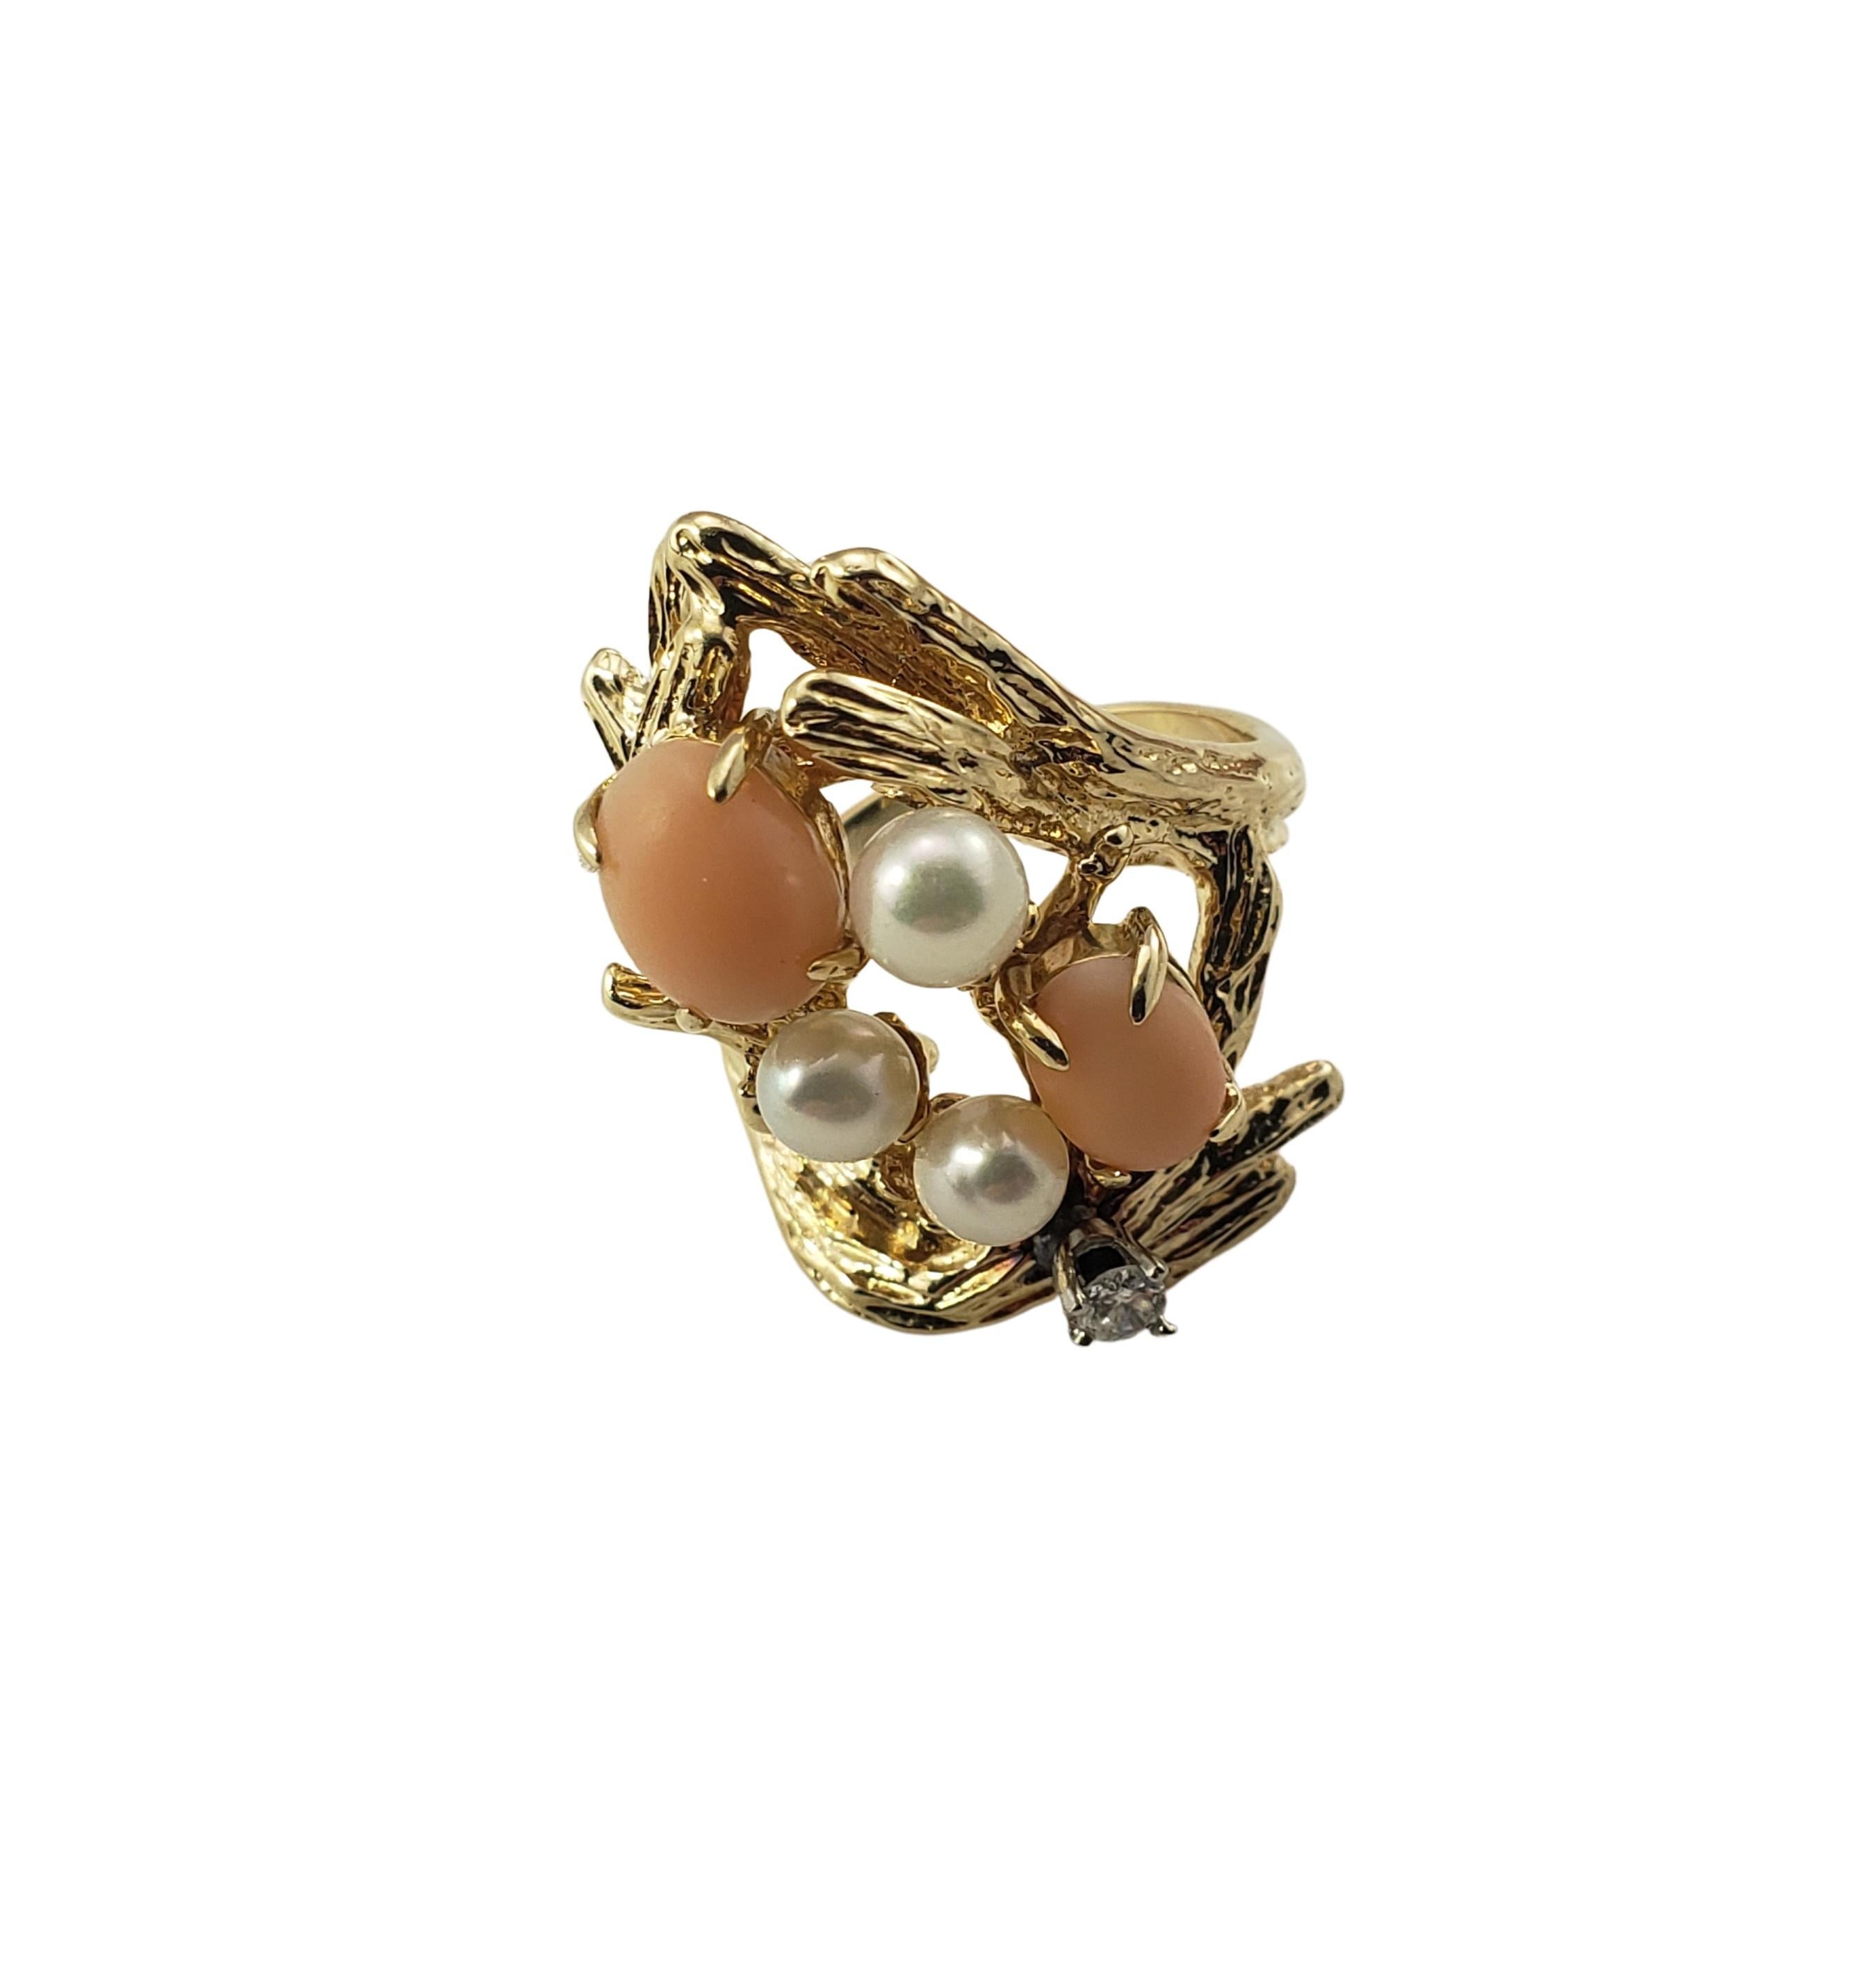 14 Karat Gelbgold Koralle, Perle und Diamant Ring Größe 5.75-

Dieser schöne Ring besteht aus zwei ovalen Korallensteinen, drei Perlen und einem runden Diamanten mit Brillantschliff, eingefasst in wunderschön detailliertes 14-karätiges Gelbgold. 